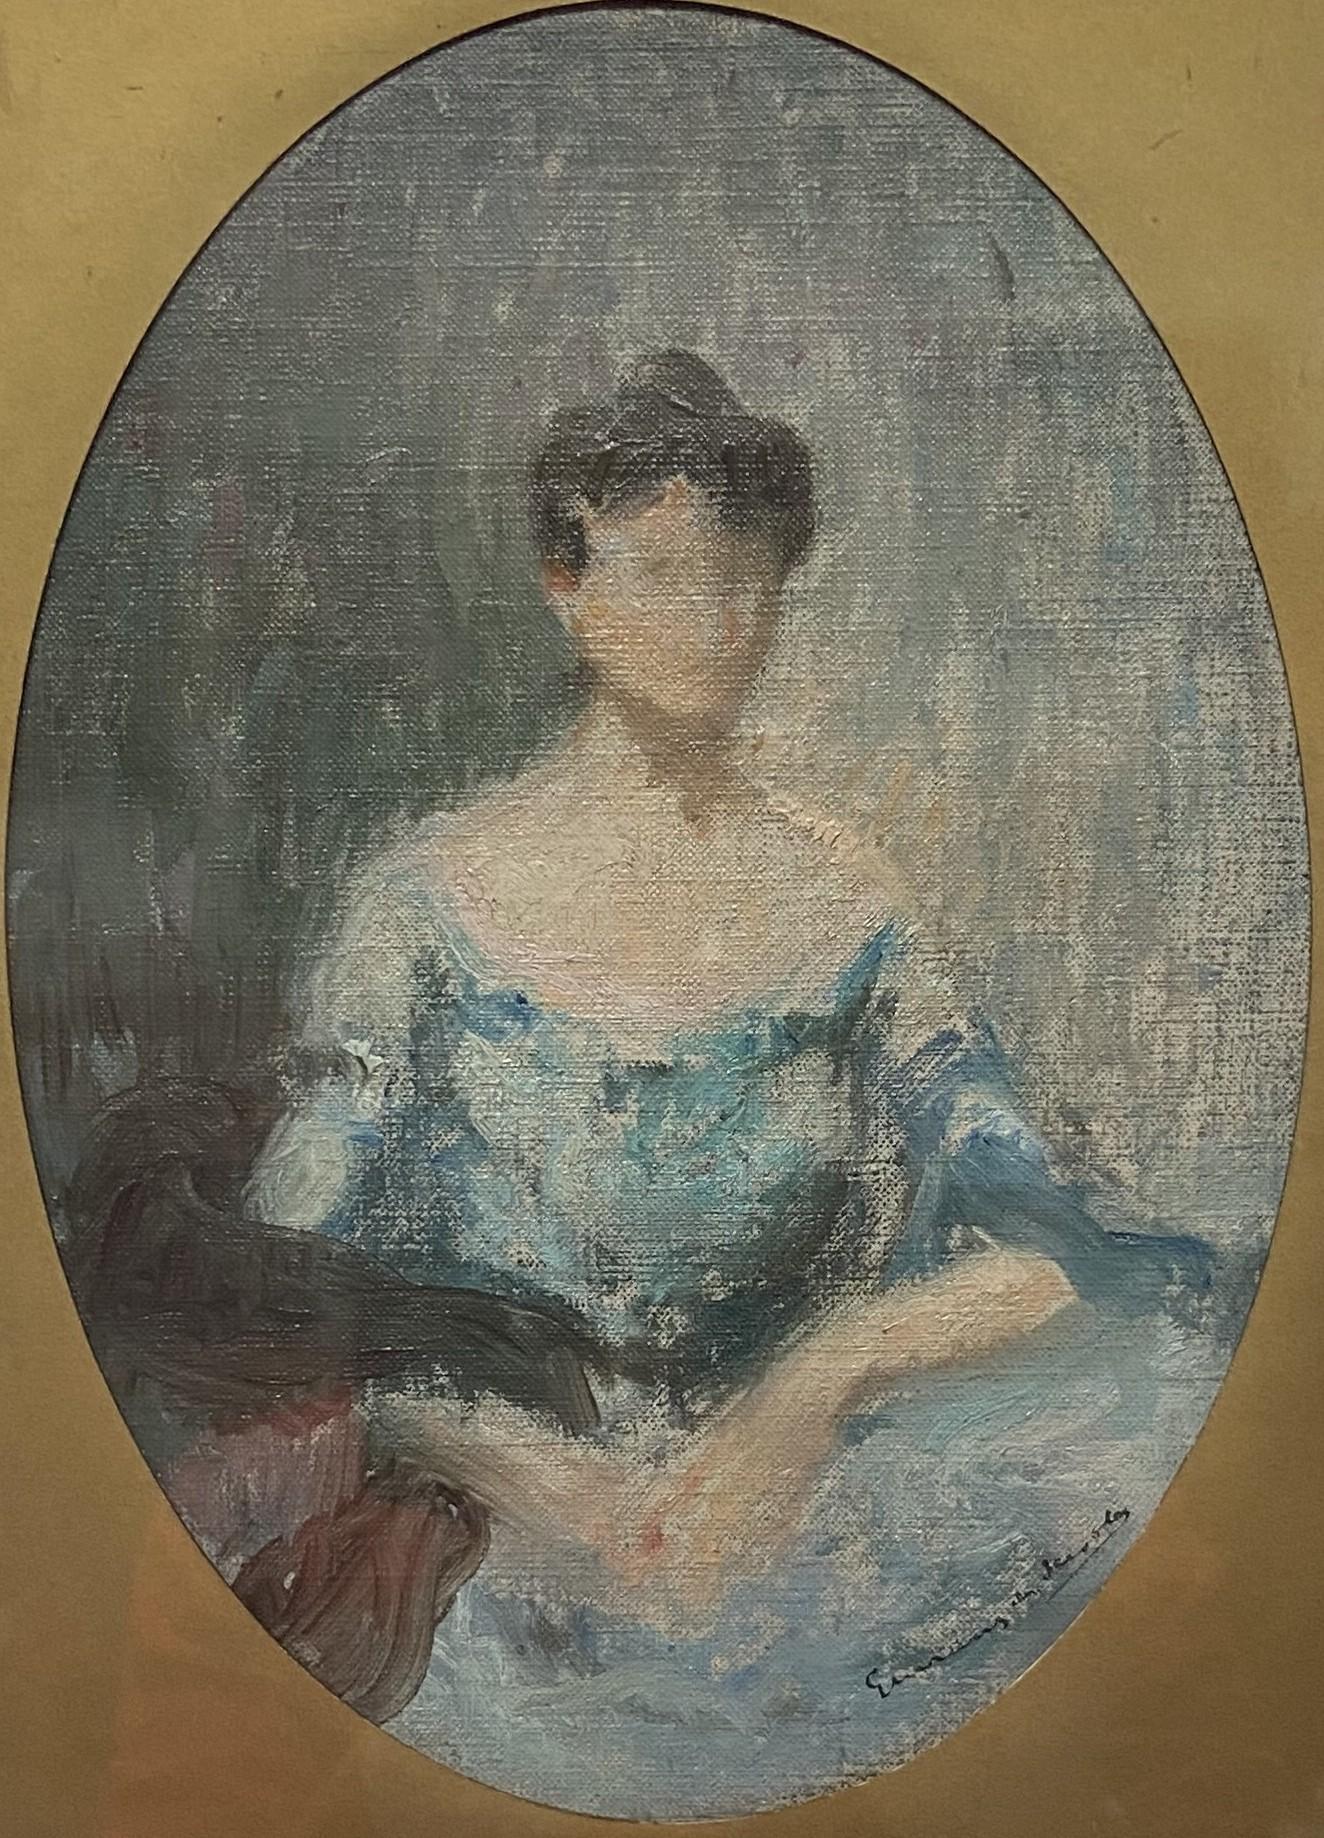 Lucien-Victor Guirand de Scévola ( 1871 - 1950)
Porträt einer Dame, eine Skizze
signiert unten rechts
Öl auf Leinwand, übertragen auf Karton
25 x 18 cm oval
Gerahmt : 31 x 24,5 cm

Diese Porträtskizze war zweifellos als fertiges Werk des Künstlers